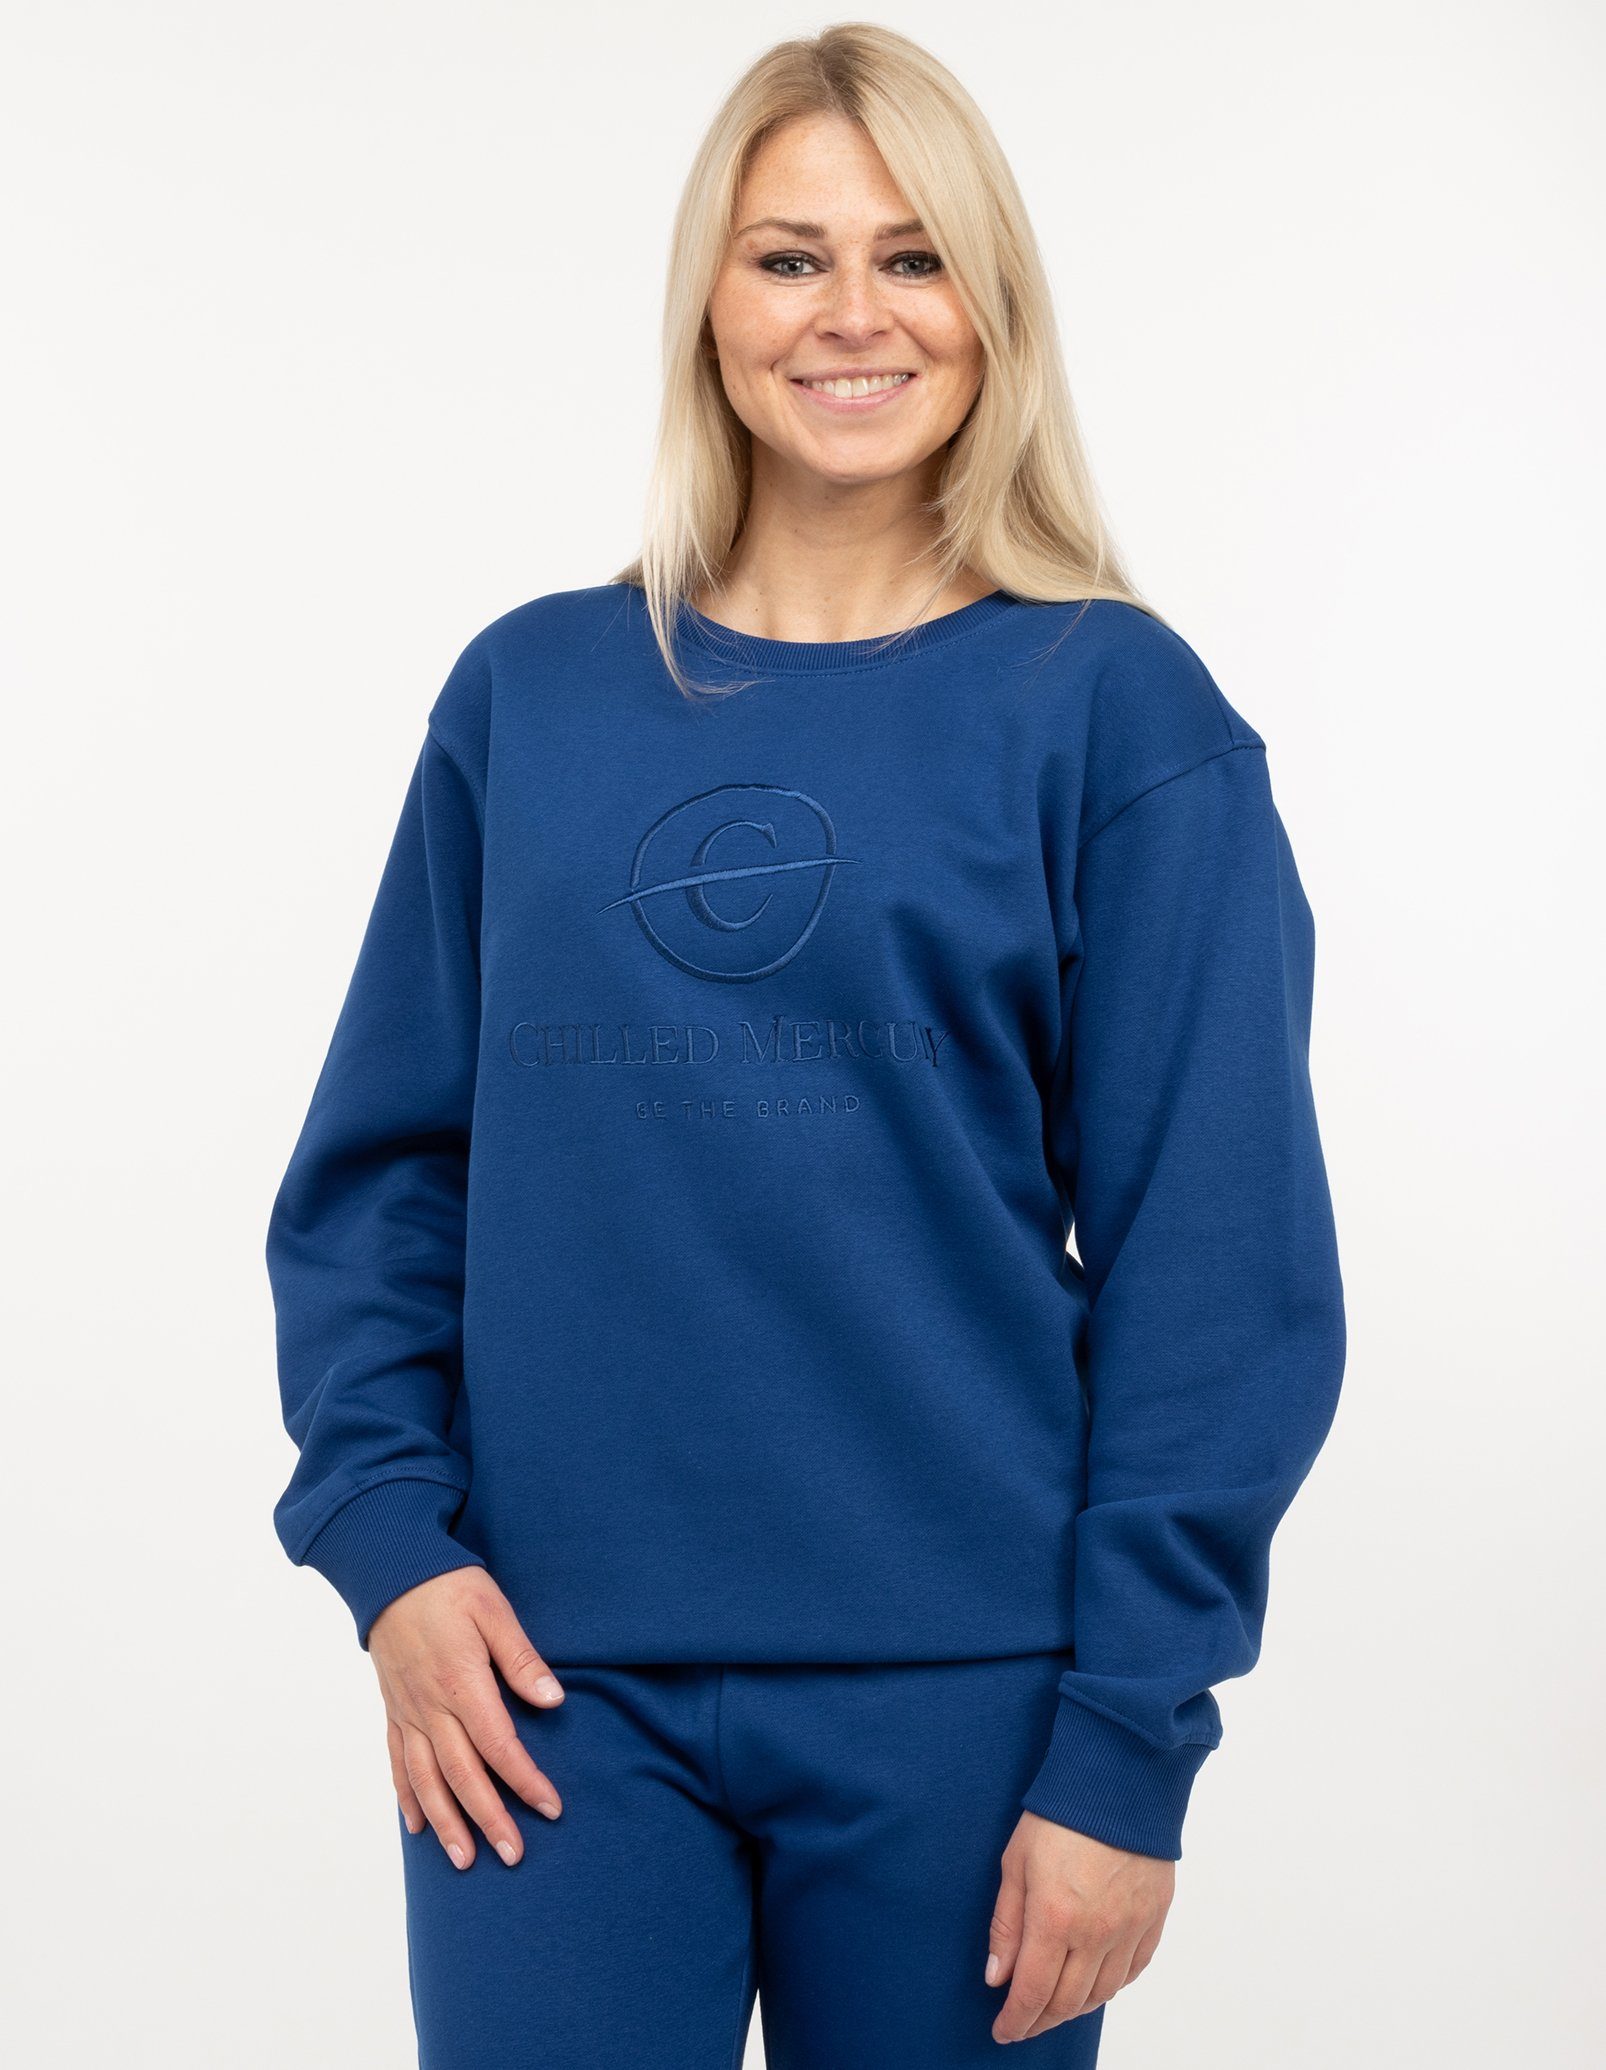 Chilled Mercury Sweatshirt Pullover / Damen Blau